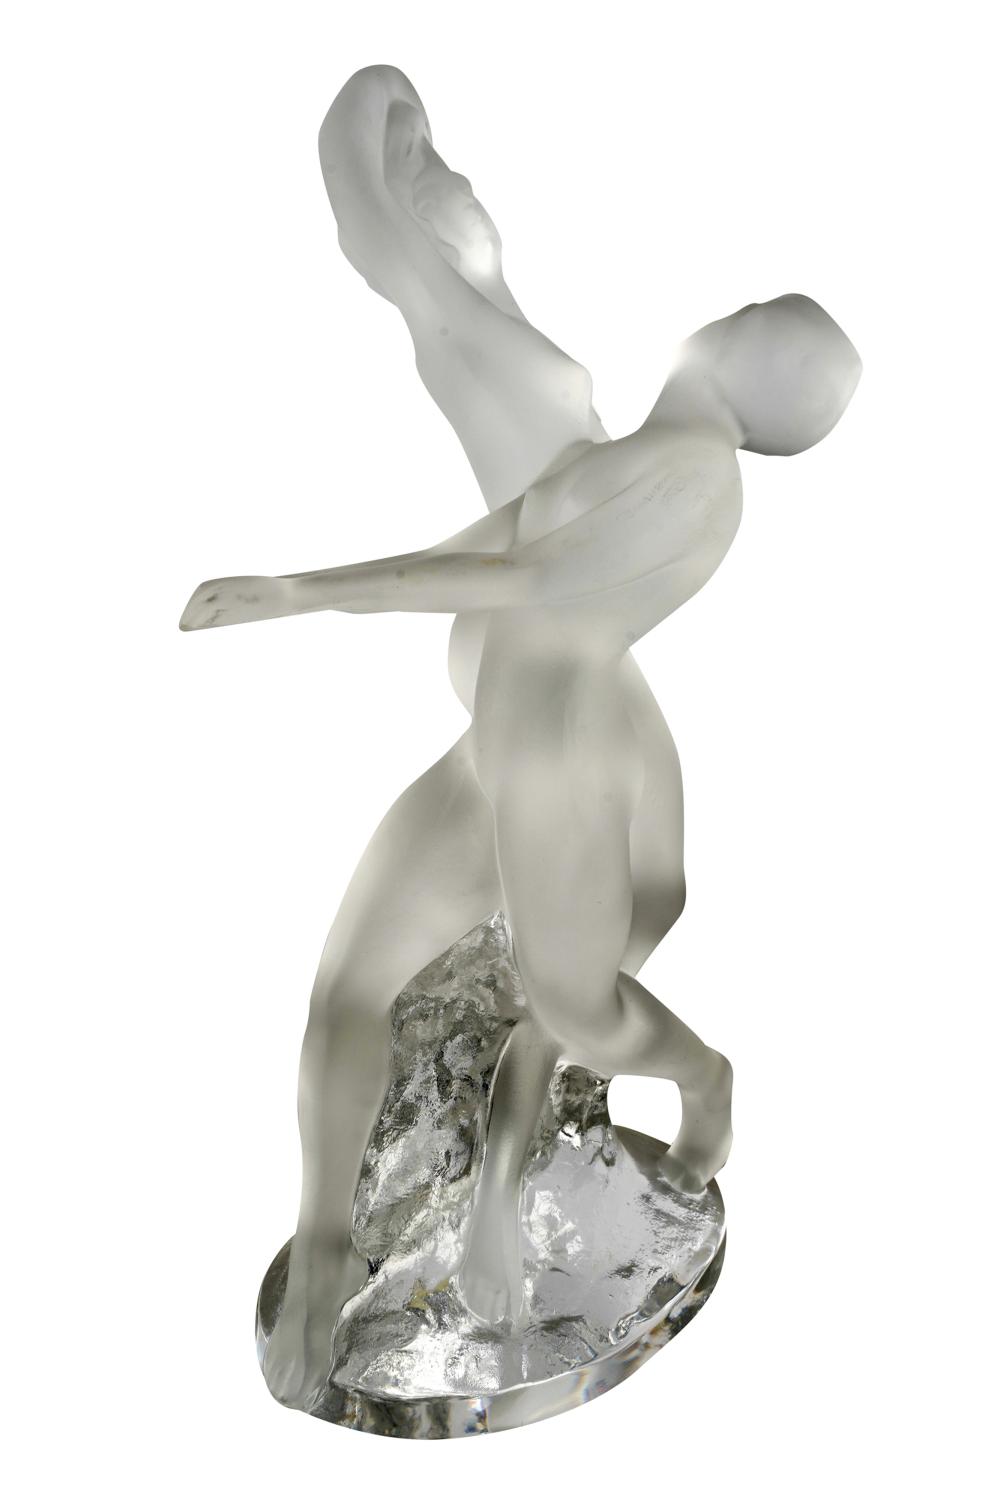 LALIQUE DANCING GROUPsigned Lalique 3331e7